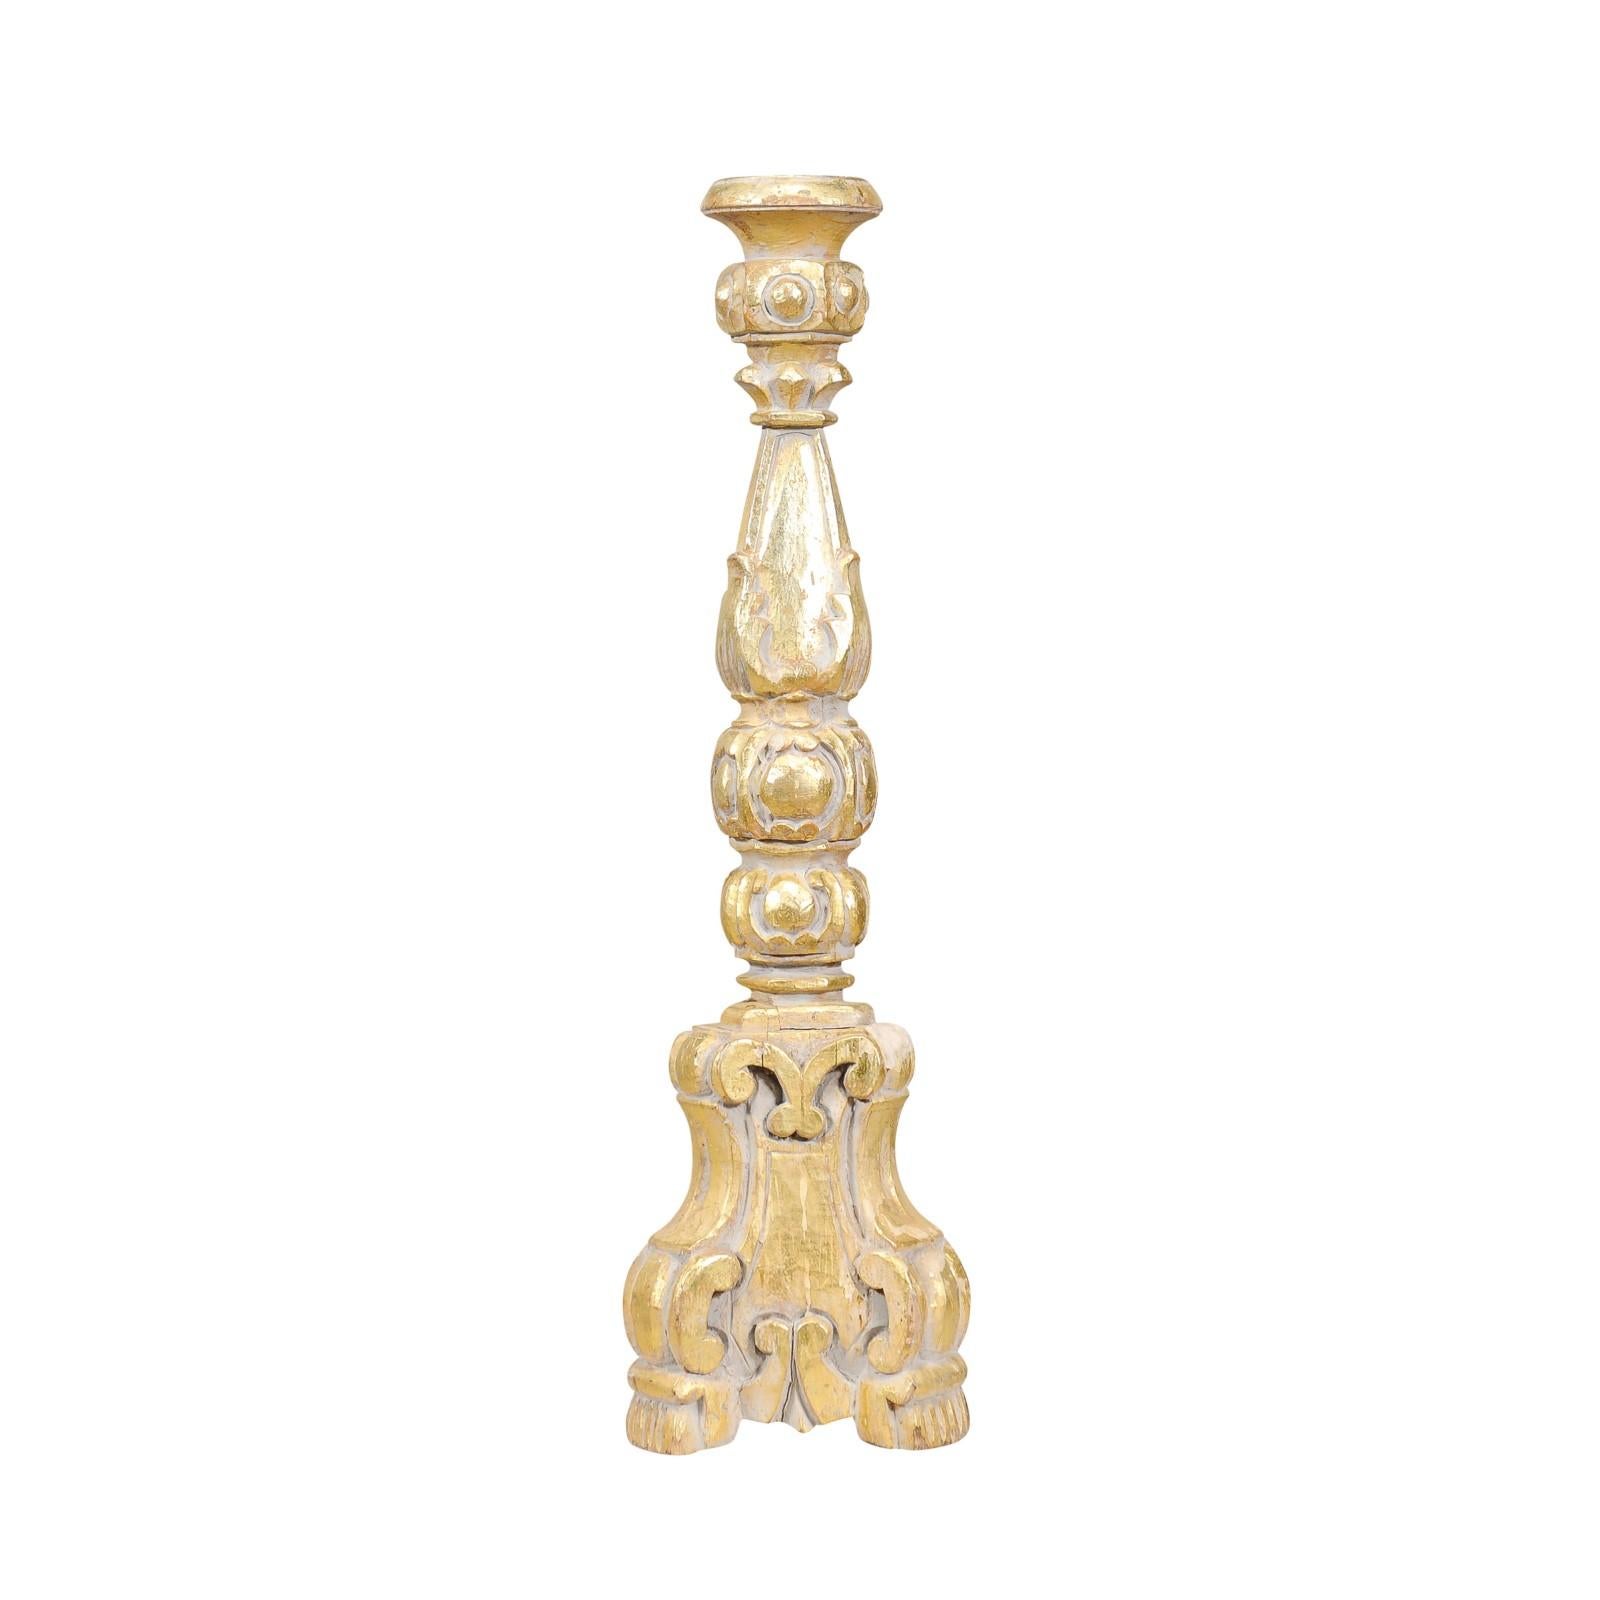 Chandelier italien en bois doré de style CIRCA, datant d'environ 1890, avec un décor de volutes sculptées. Ce chandelier italien en bois doré de style CIRCA, datant d'environ 1890, respire l'opulence et l'élégance. Son design ornemental témoigne du